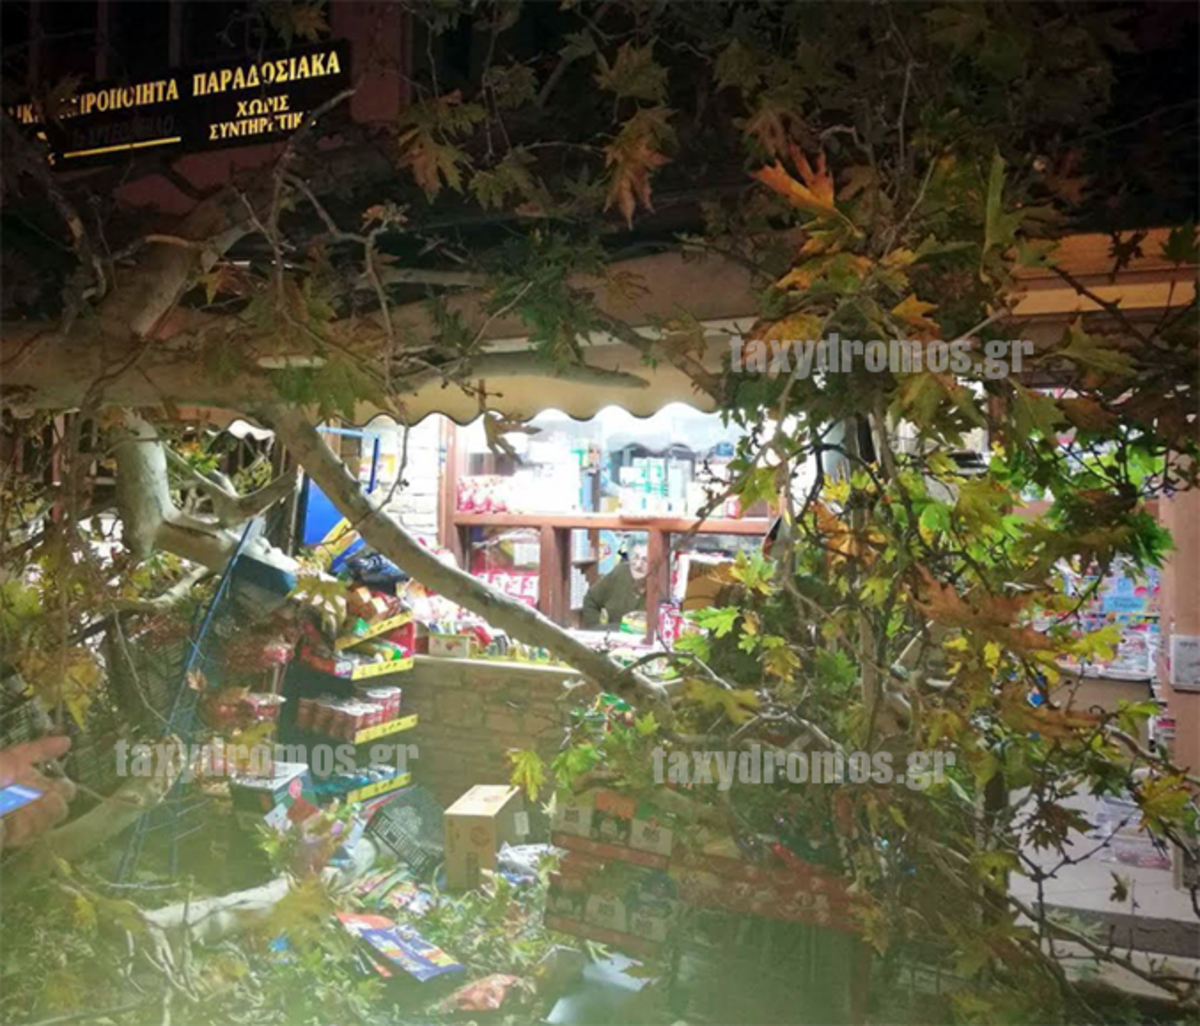 Πήλιο: Νέες εικόνες από την κατάρρευση μεγάλου πλάτανου στην Πορταριά – Τραυματίστηκε ιδιοκτήτρια περιπτέρου [pics]